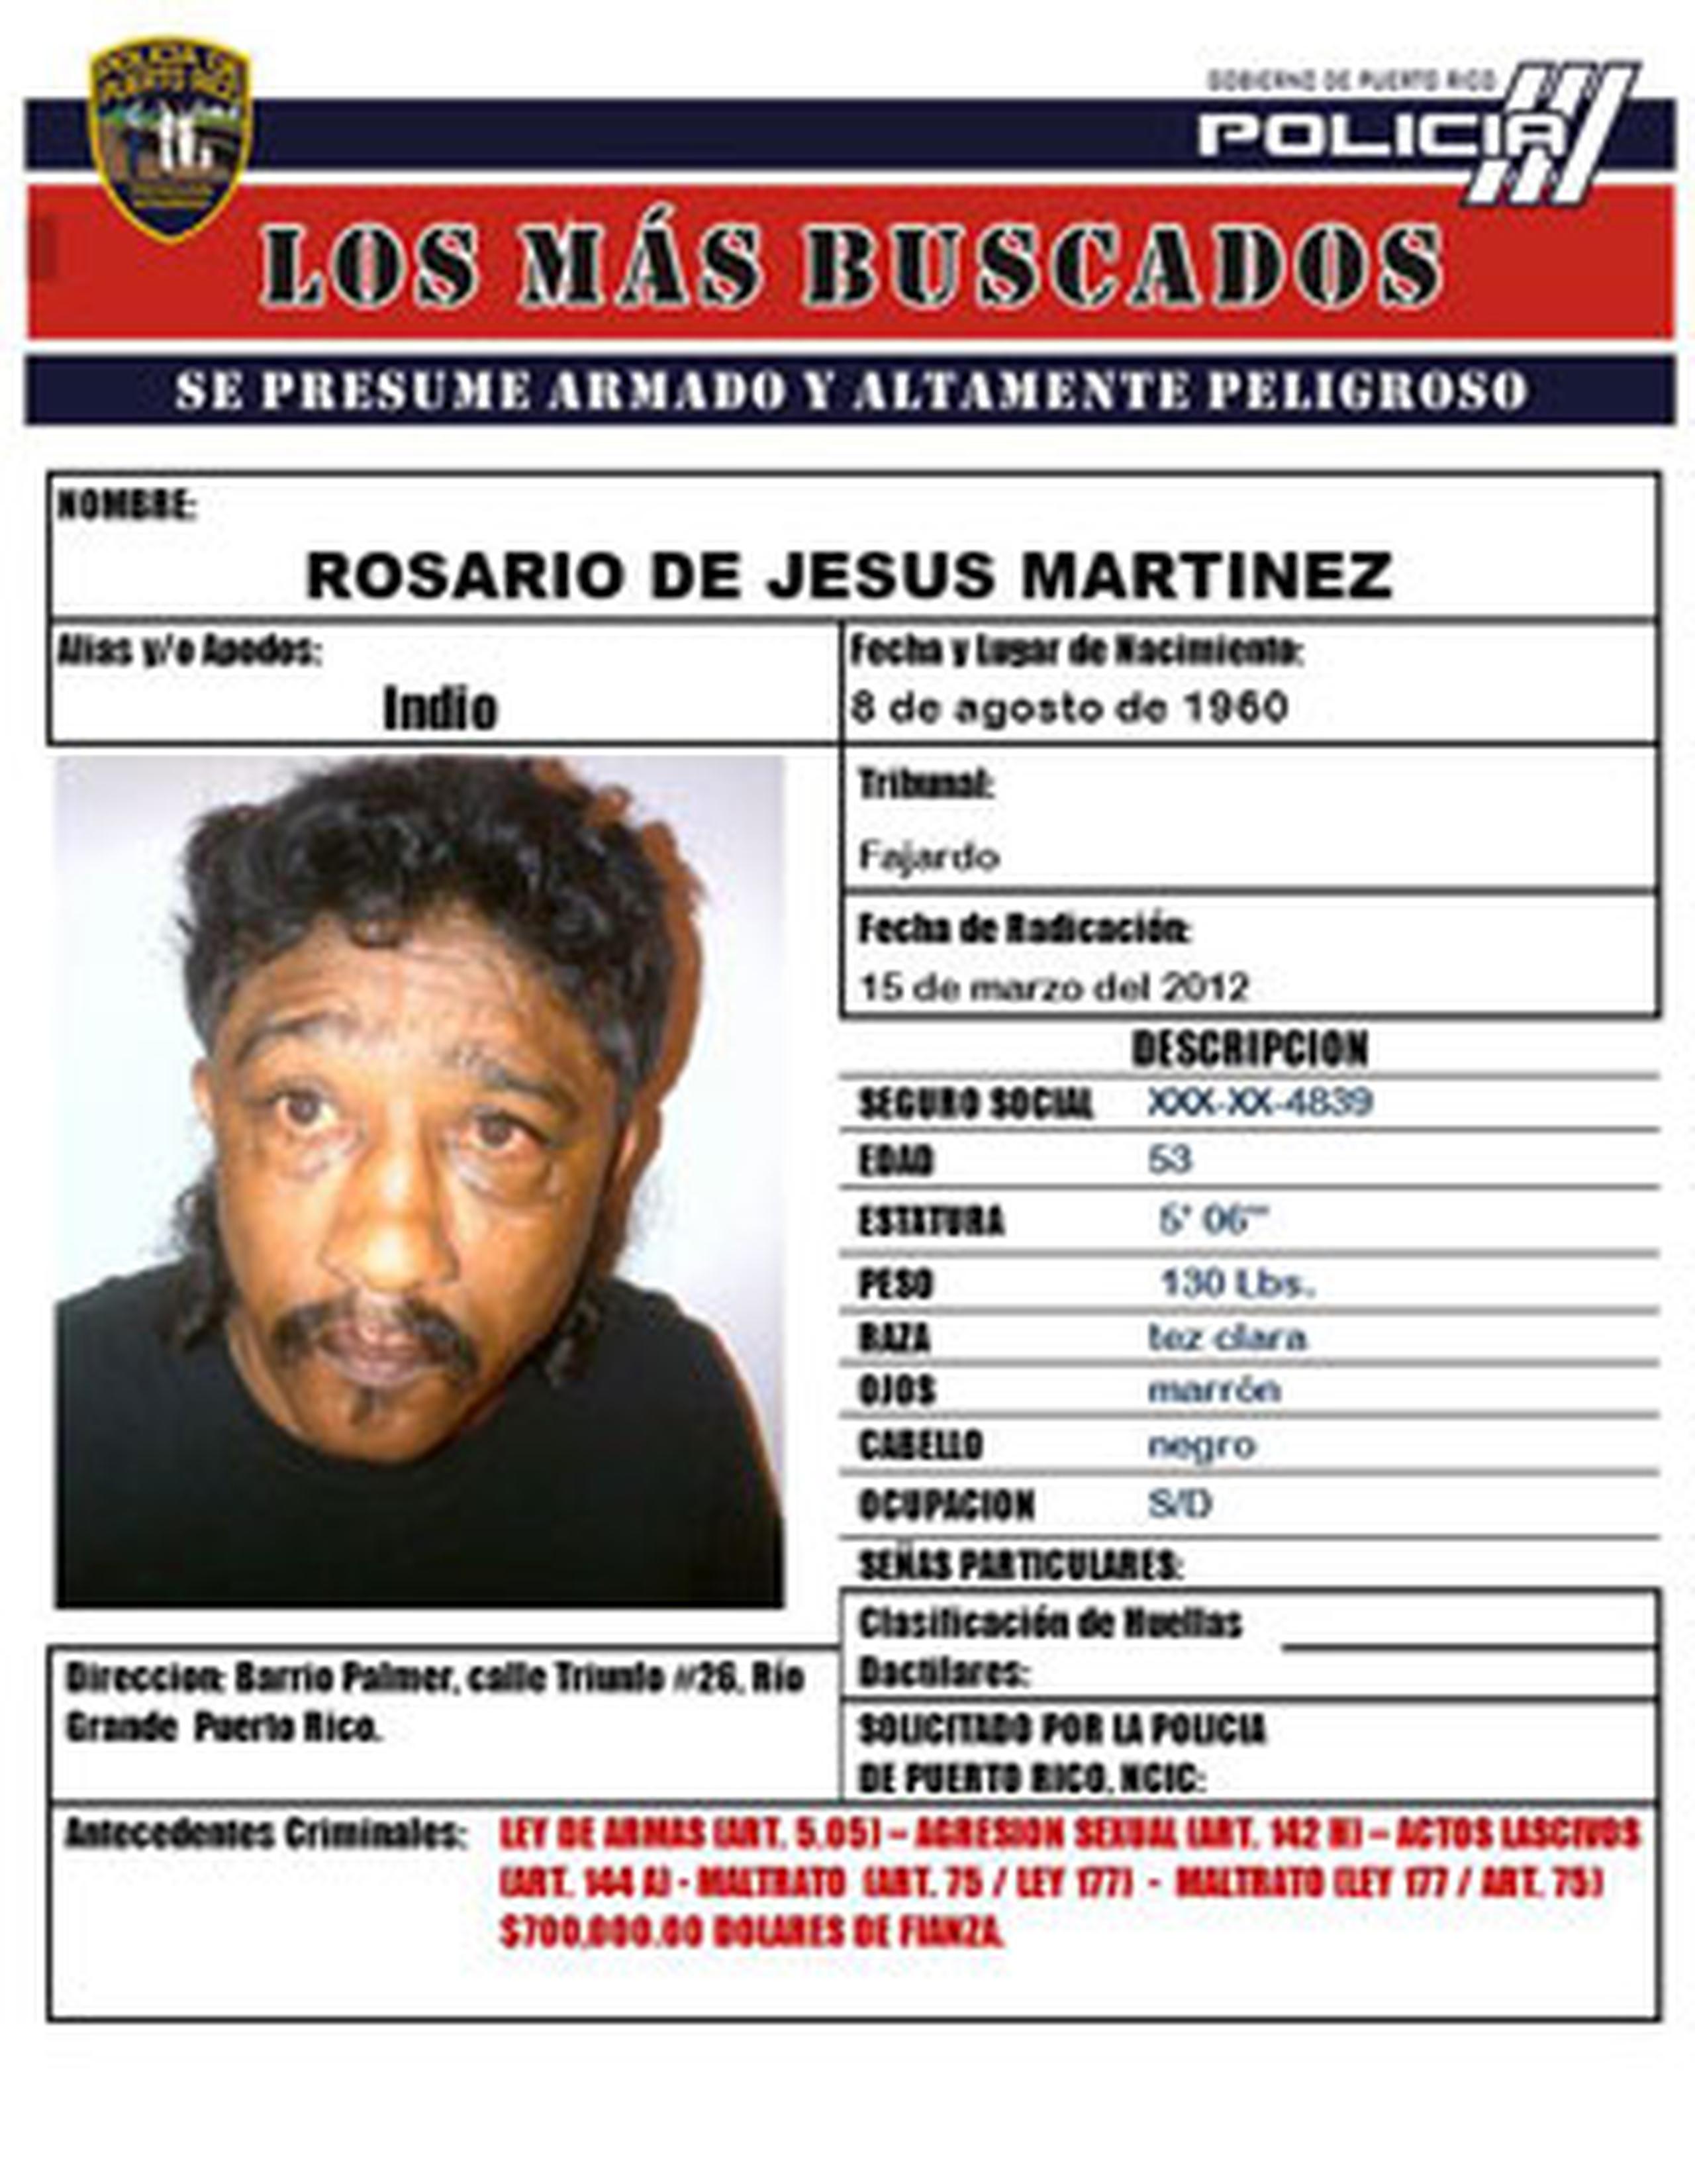 El teniente Luis E. Díaz Muñoz identificó al prófugo como Rosario De Jesús Martínez, de 53 años, natural del barrio Palmer de Río Grande. (Suministrada)